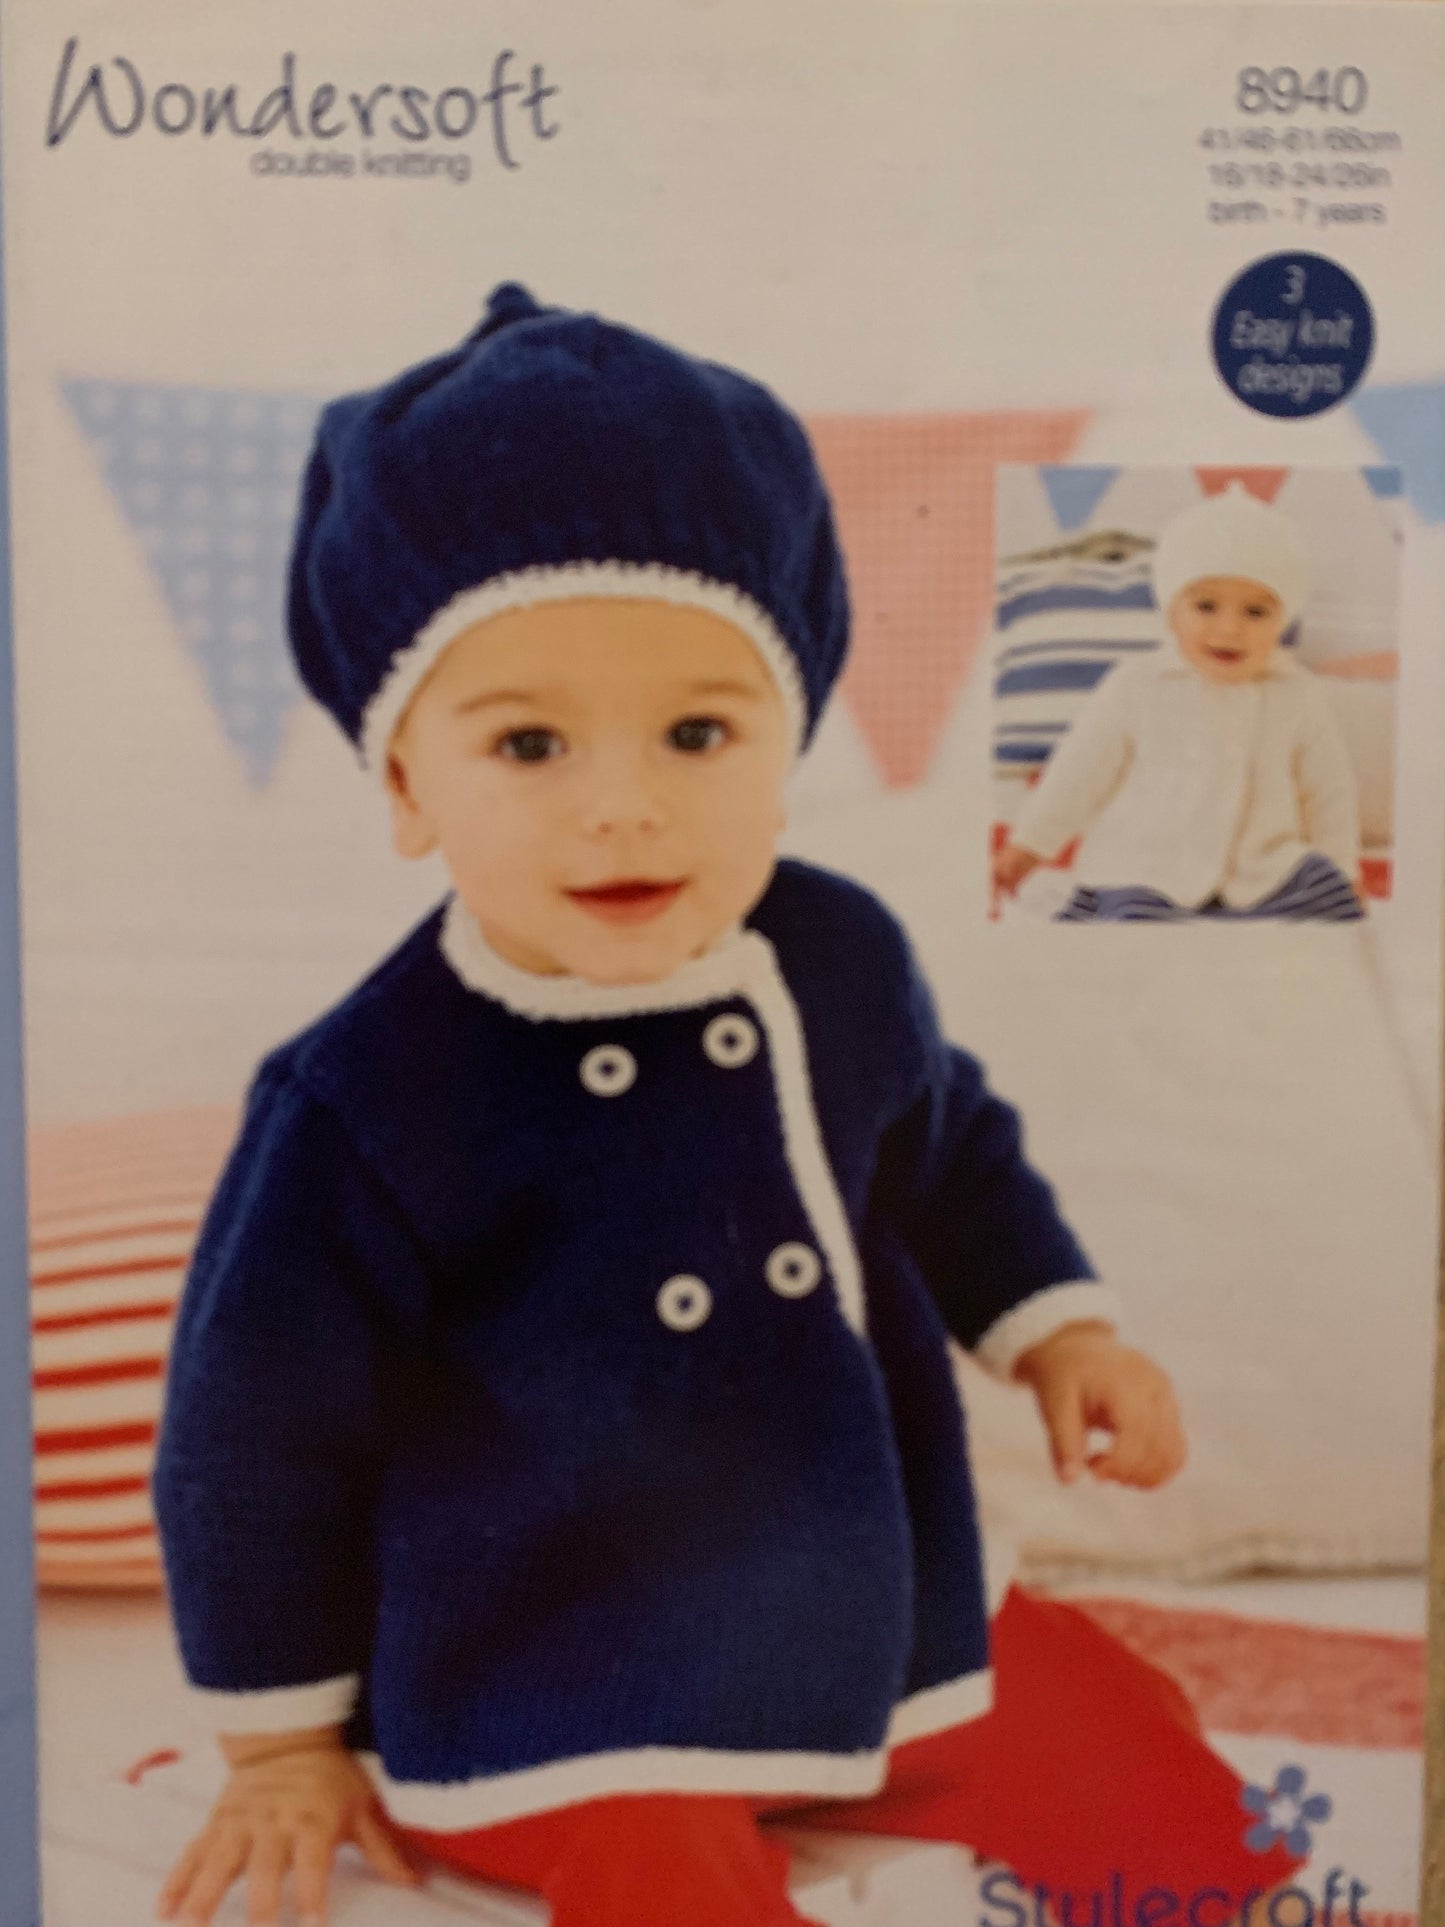 8940 Stylecraft Wondersoft DK baby child coats and berets knitting pattern